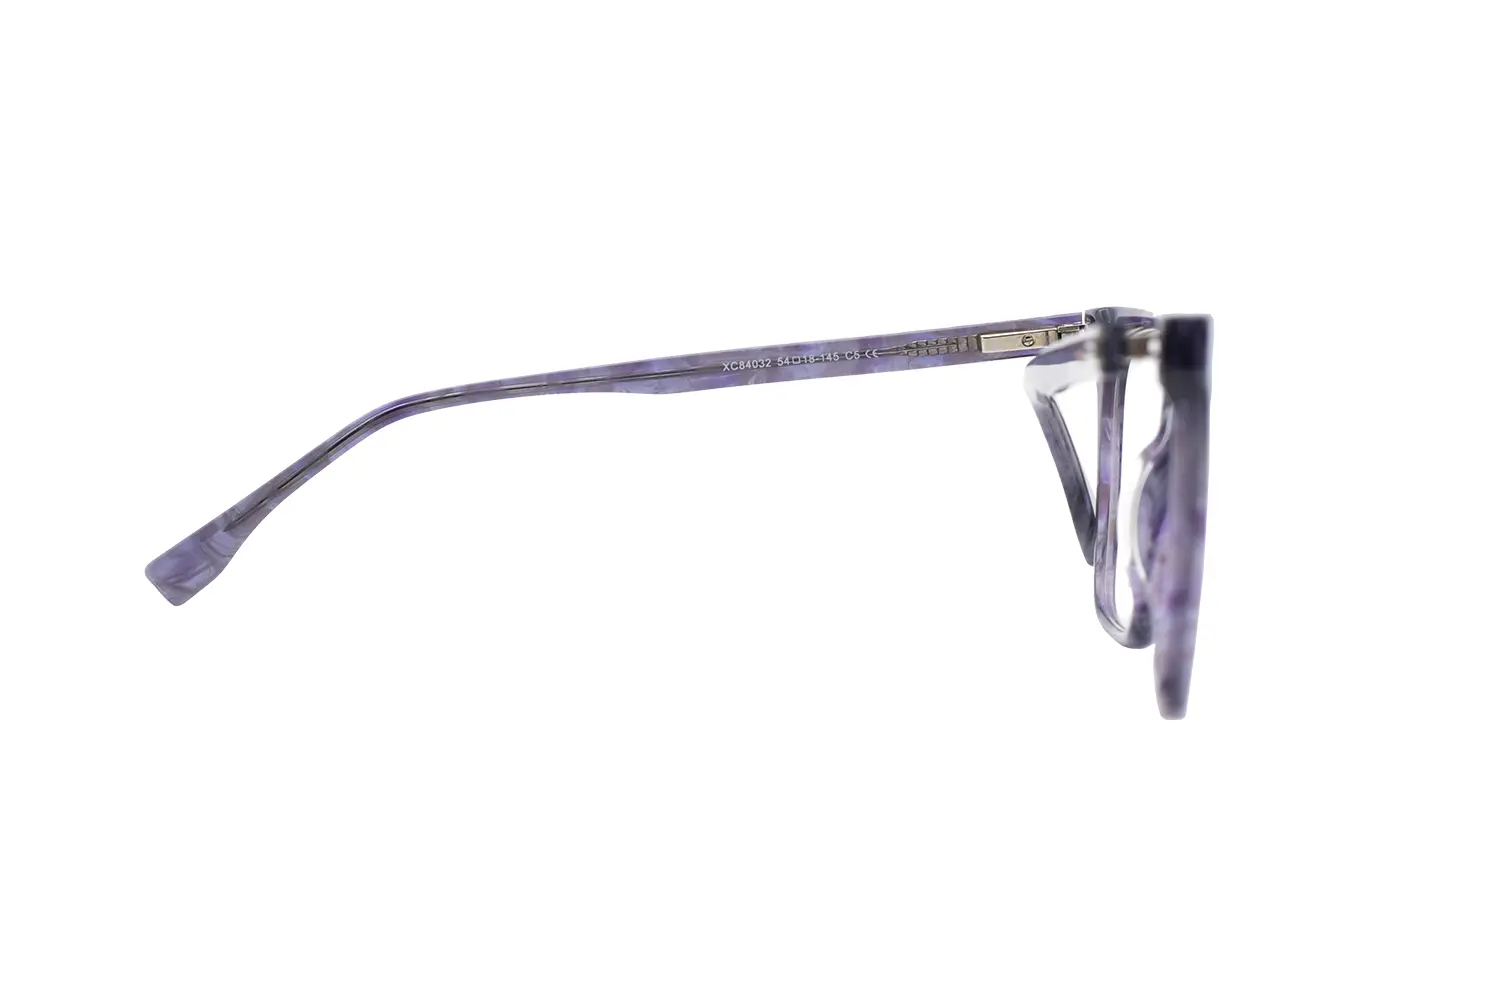 عینک طبی GUESS مدل XC84032 C5 - دکترعینک